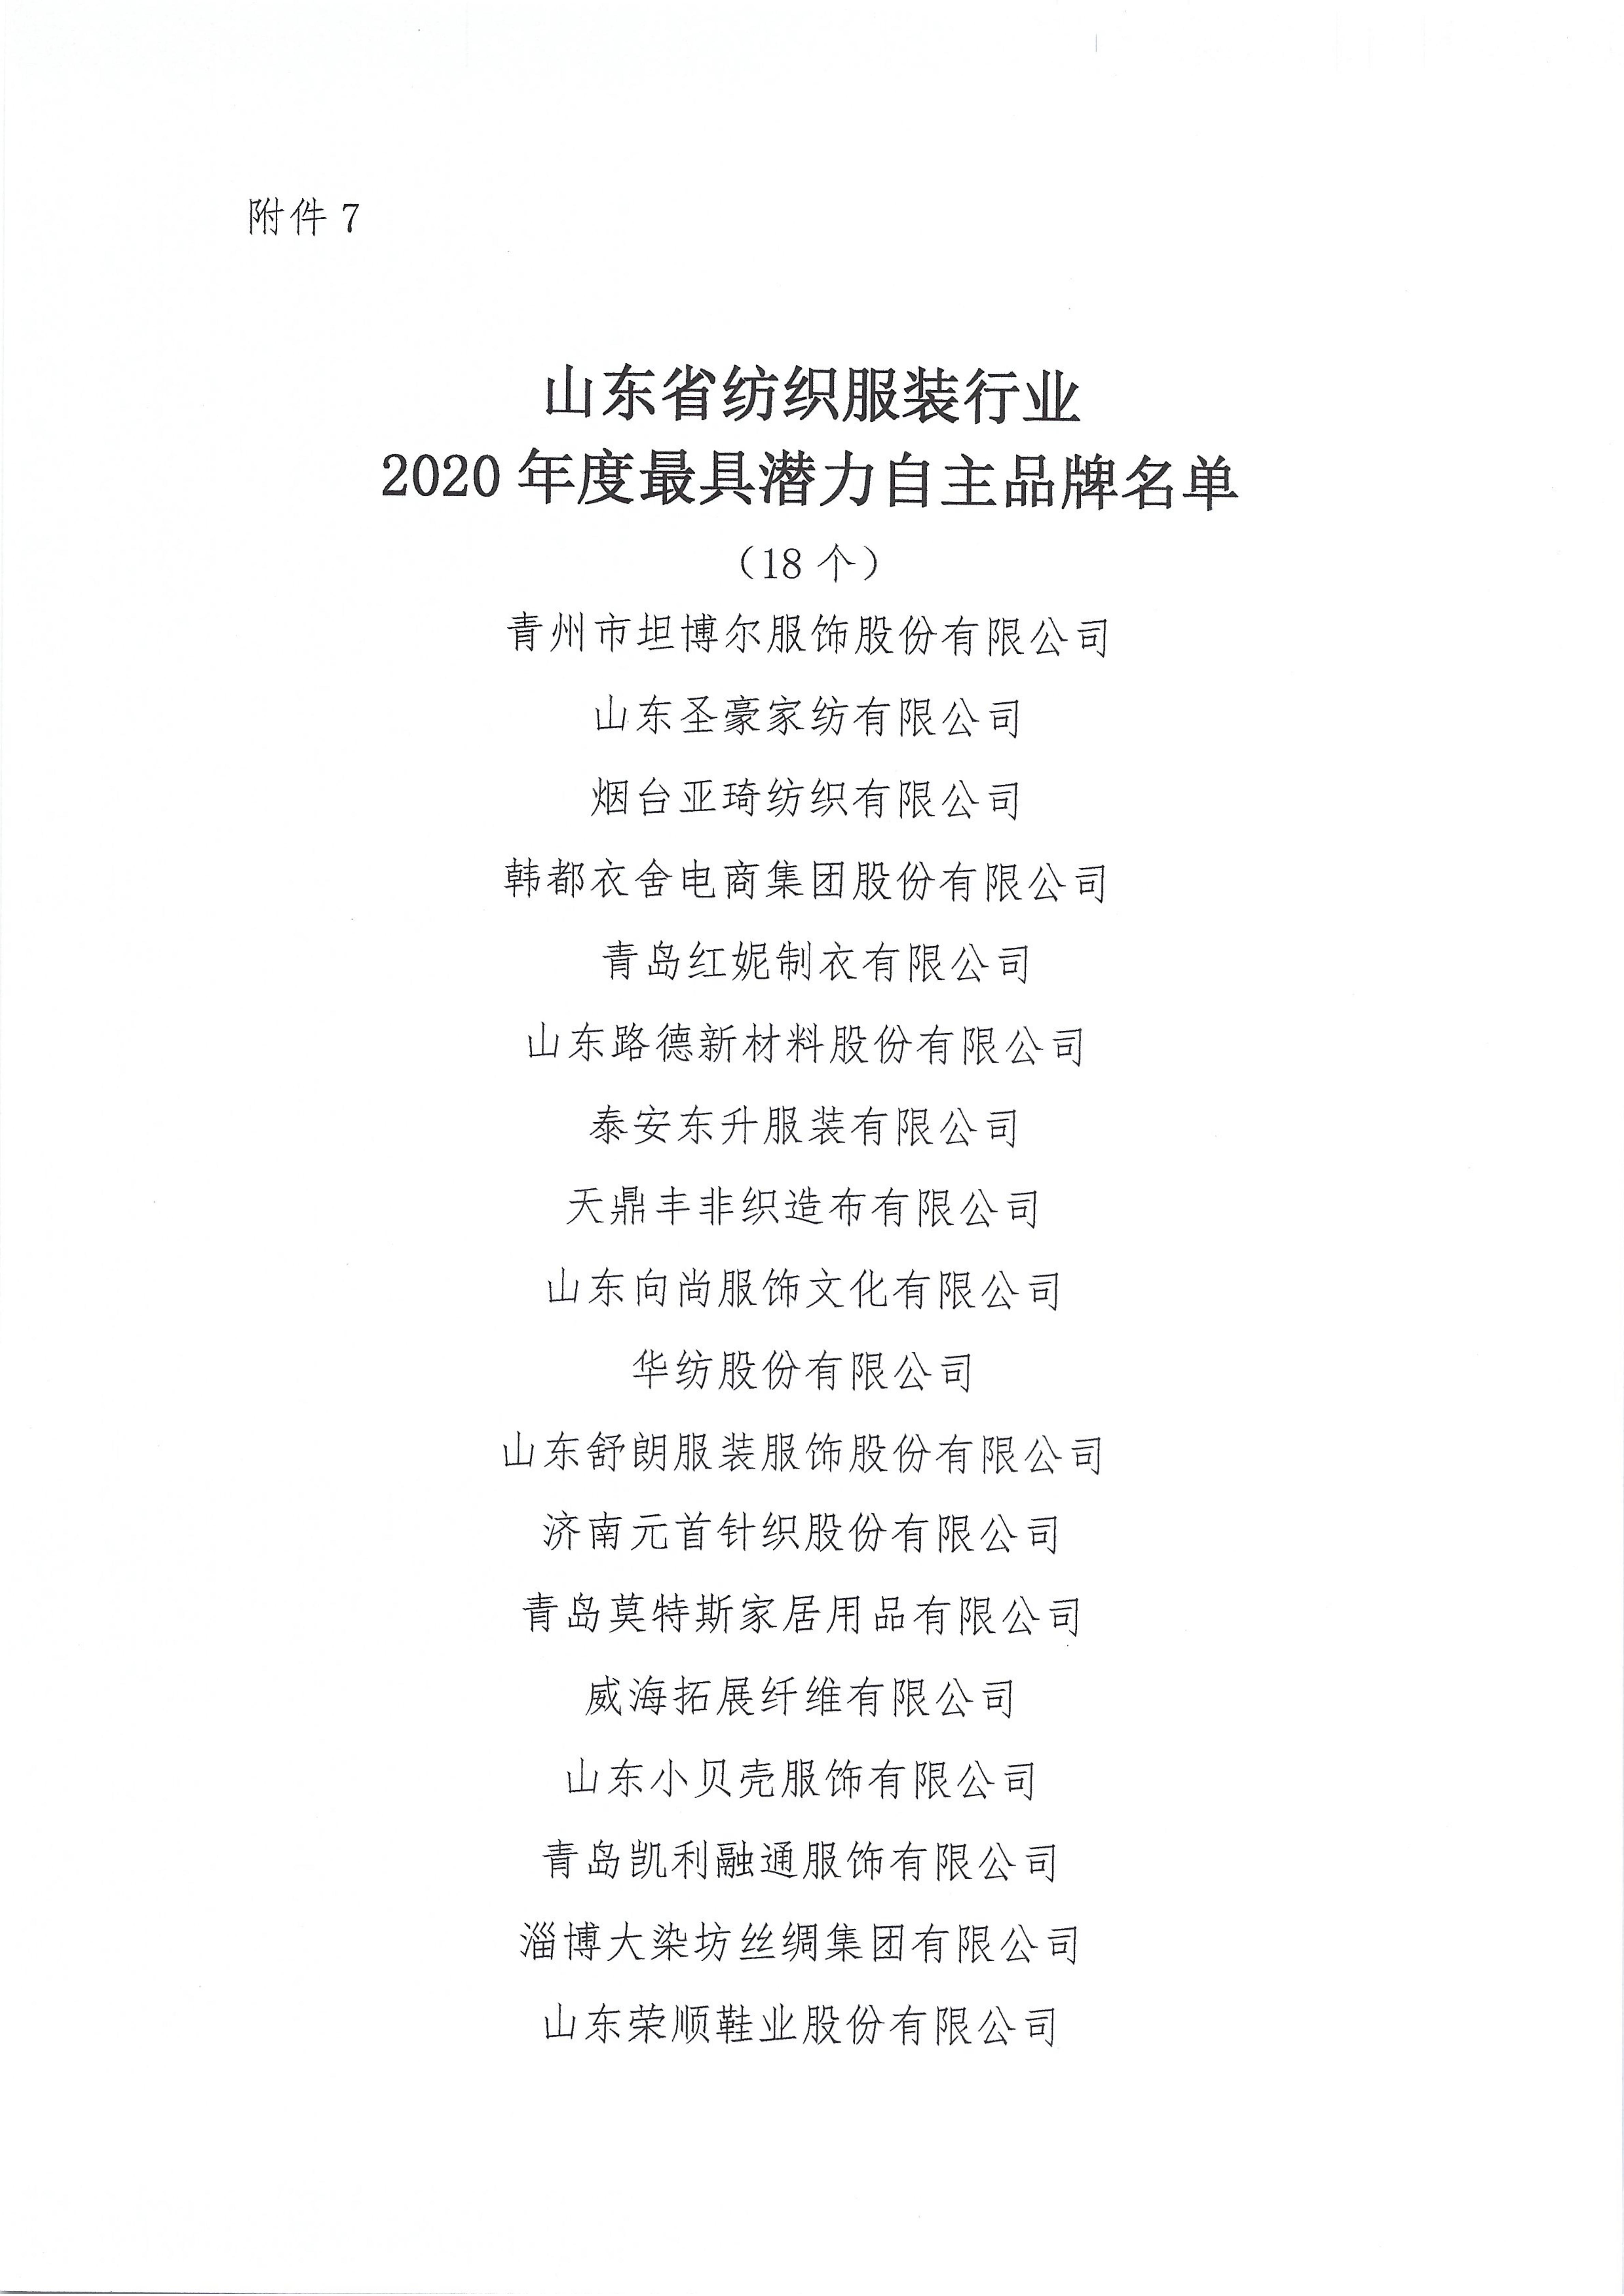 關于授予2020年度山東省紡織服裝行業新冠戰疫特別貢獻獎等獎項的決定_13.jpg